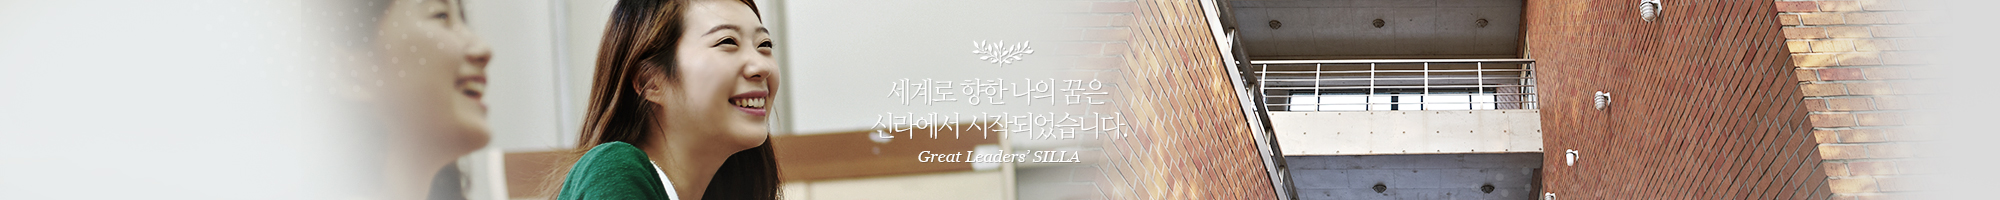 세계로 향한 나의 꿈은 신라에서 시작되었습니다. Great Leaders' SILLA